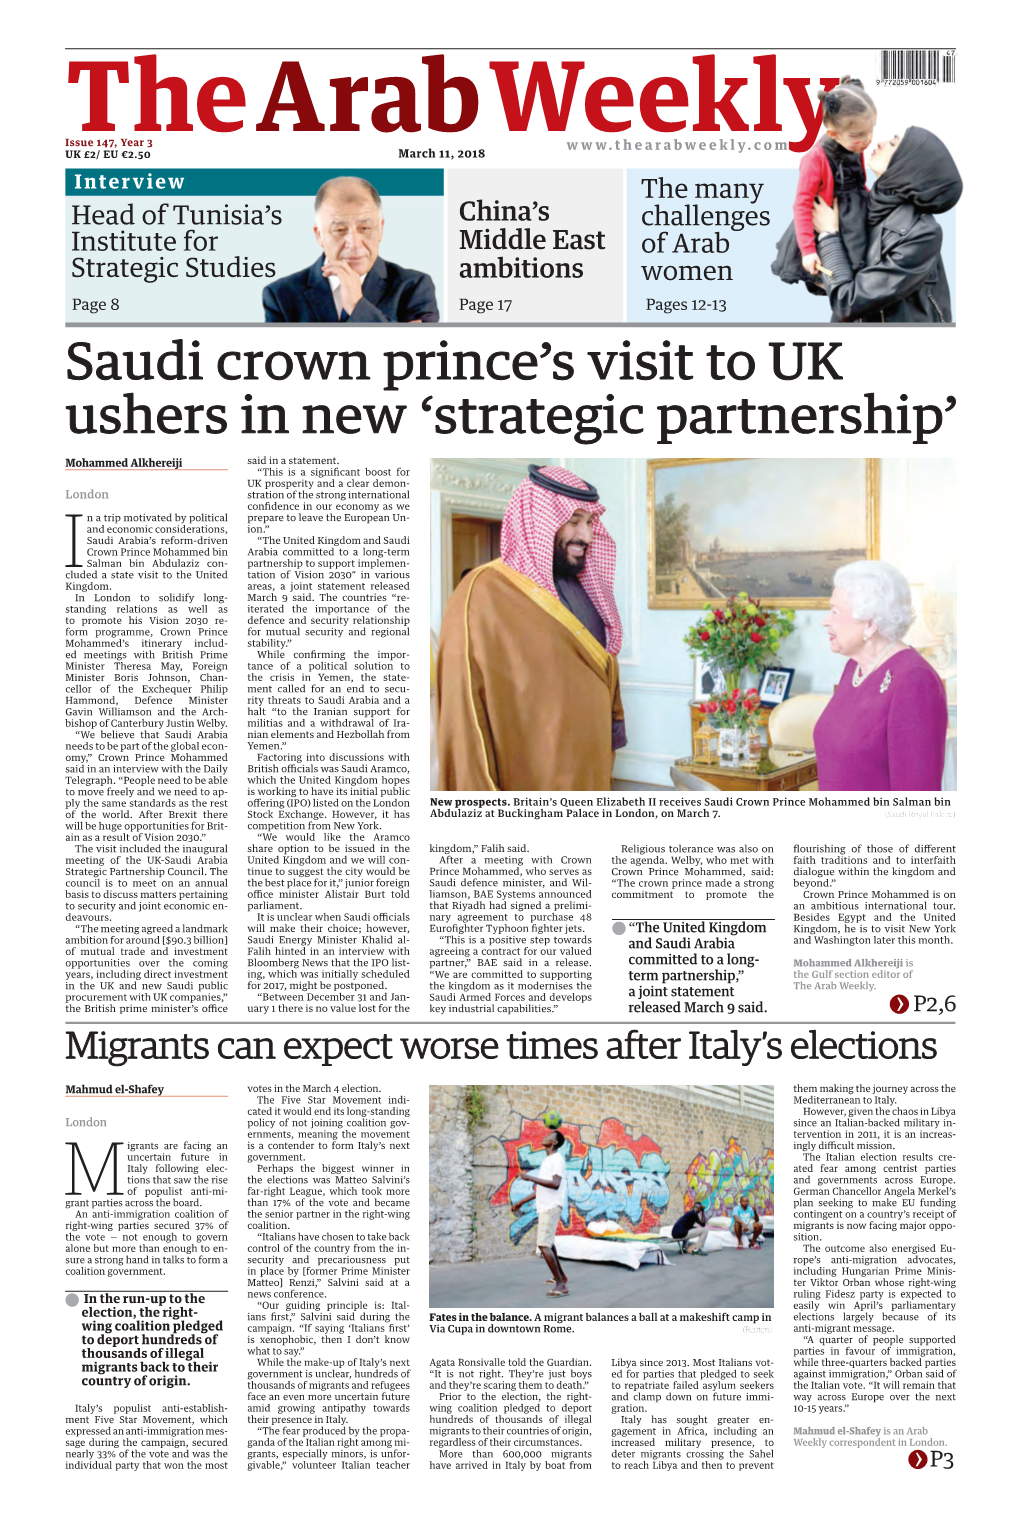 Saudi Crown Prince's Visit to UK Ushers in New 'Strategic Partnership'